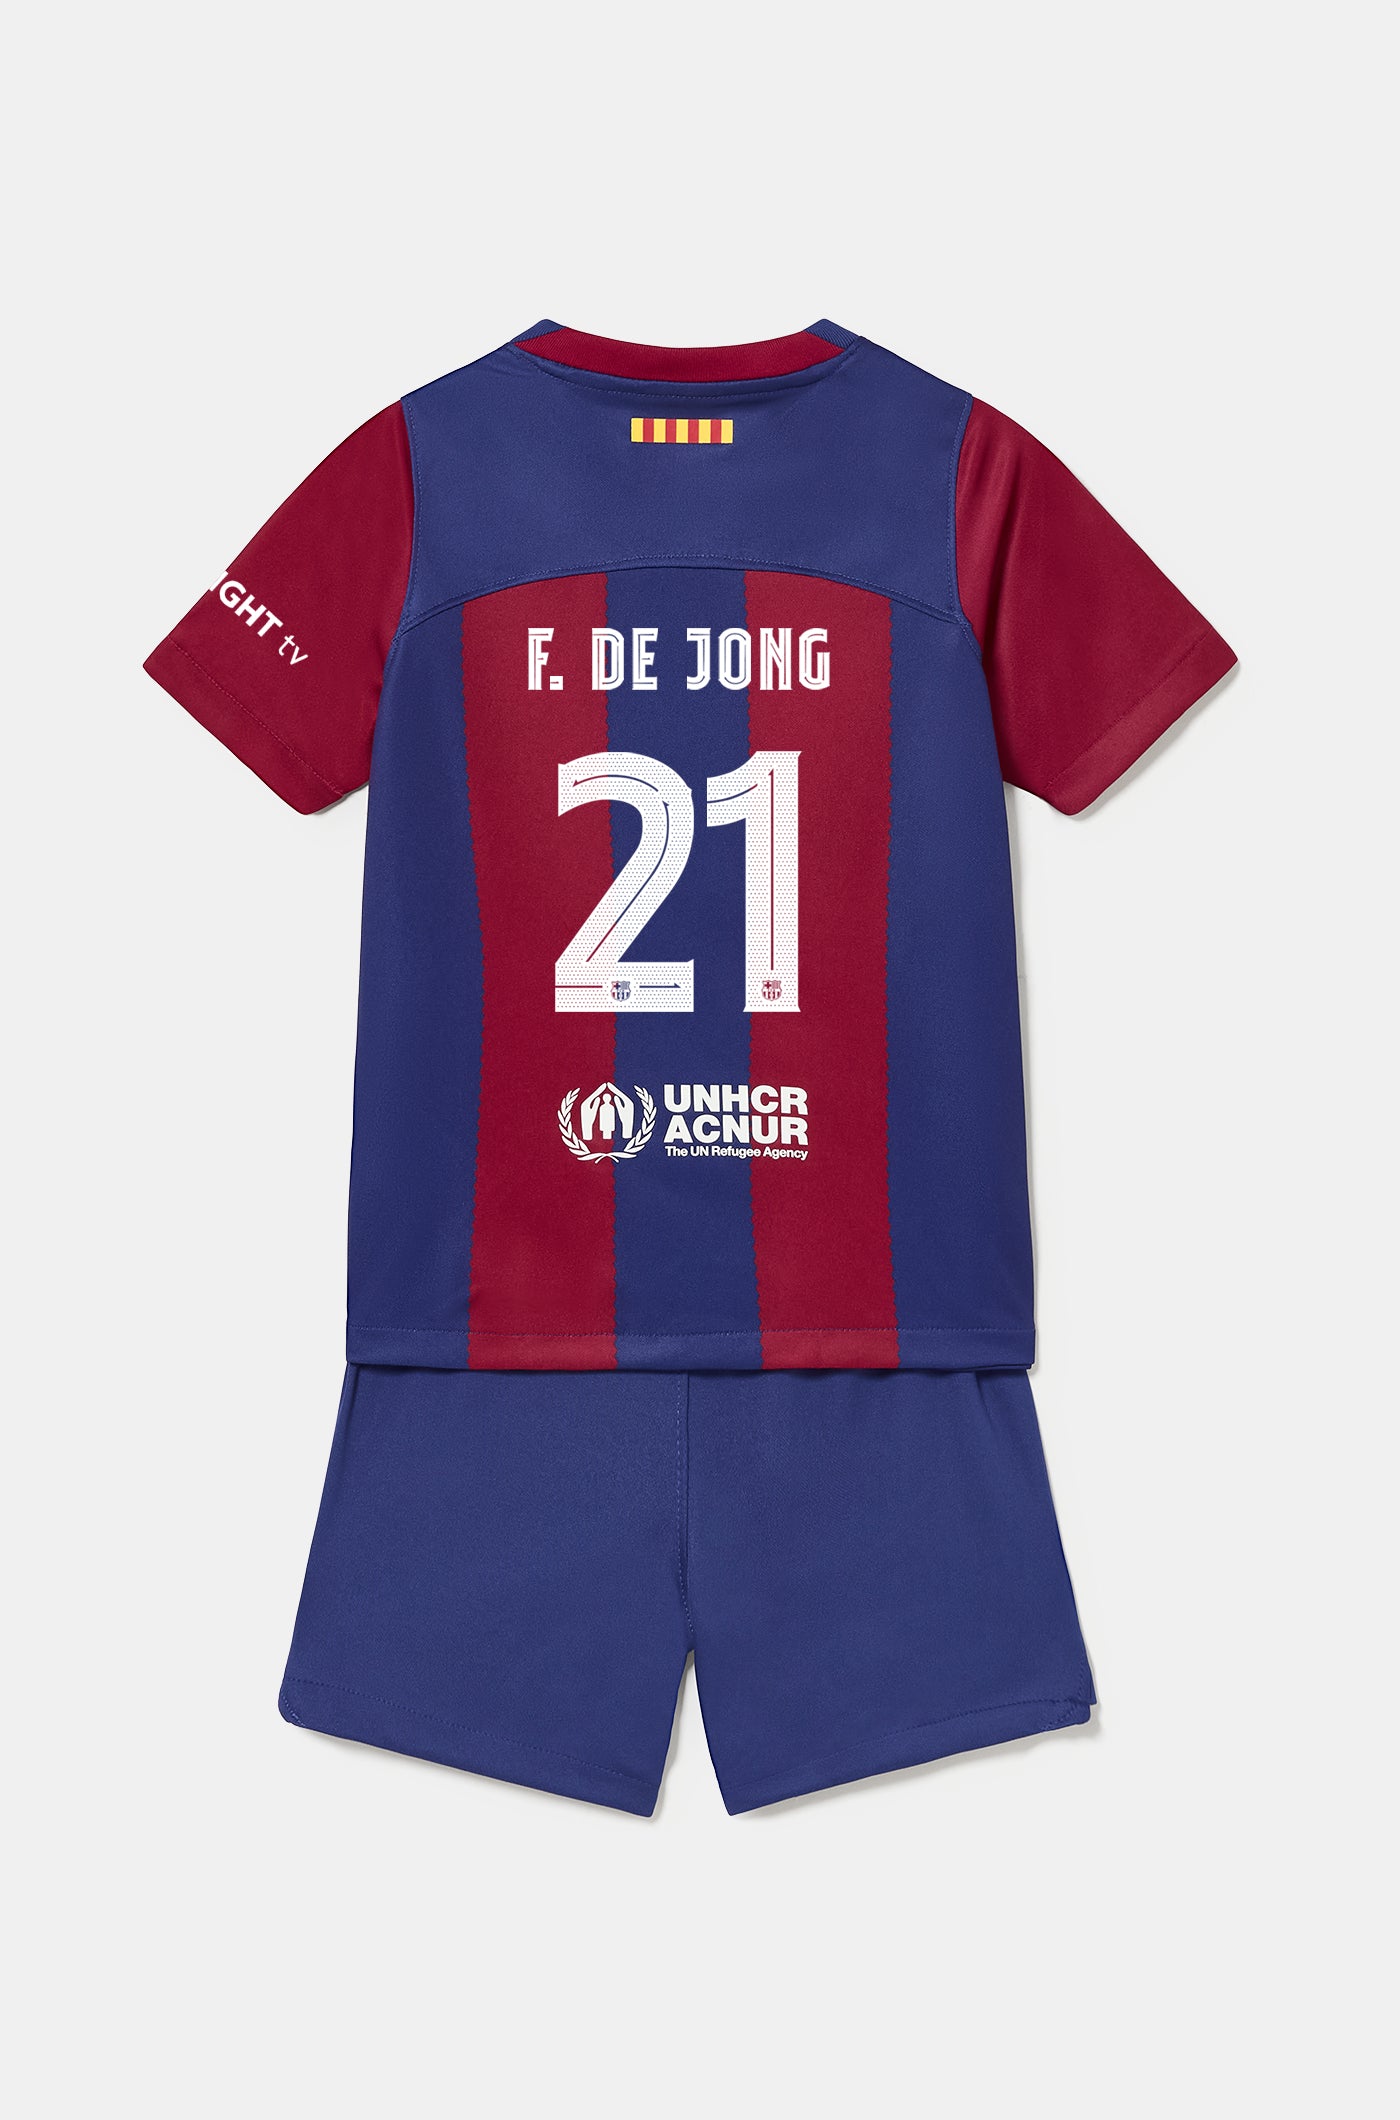 Conjunt primer equipament FC Barcelona 23/24 - Nen/a petit/a  - F. DE JONG